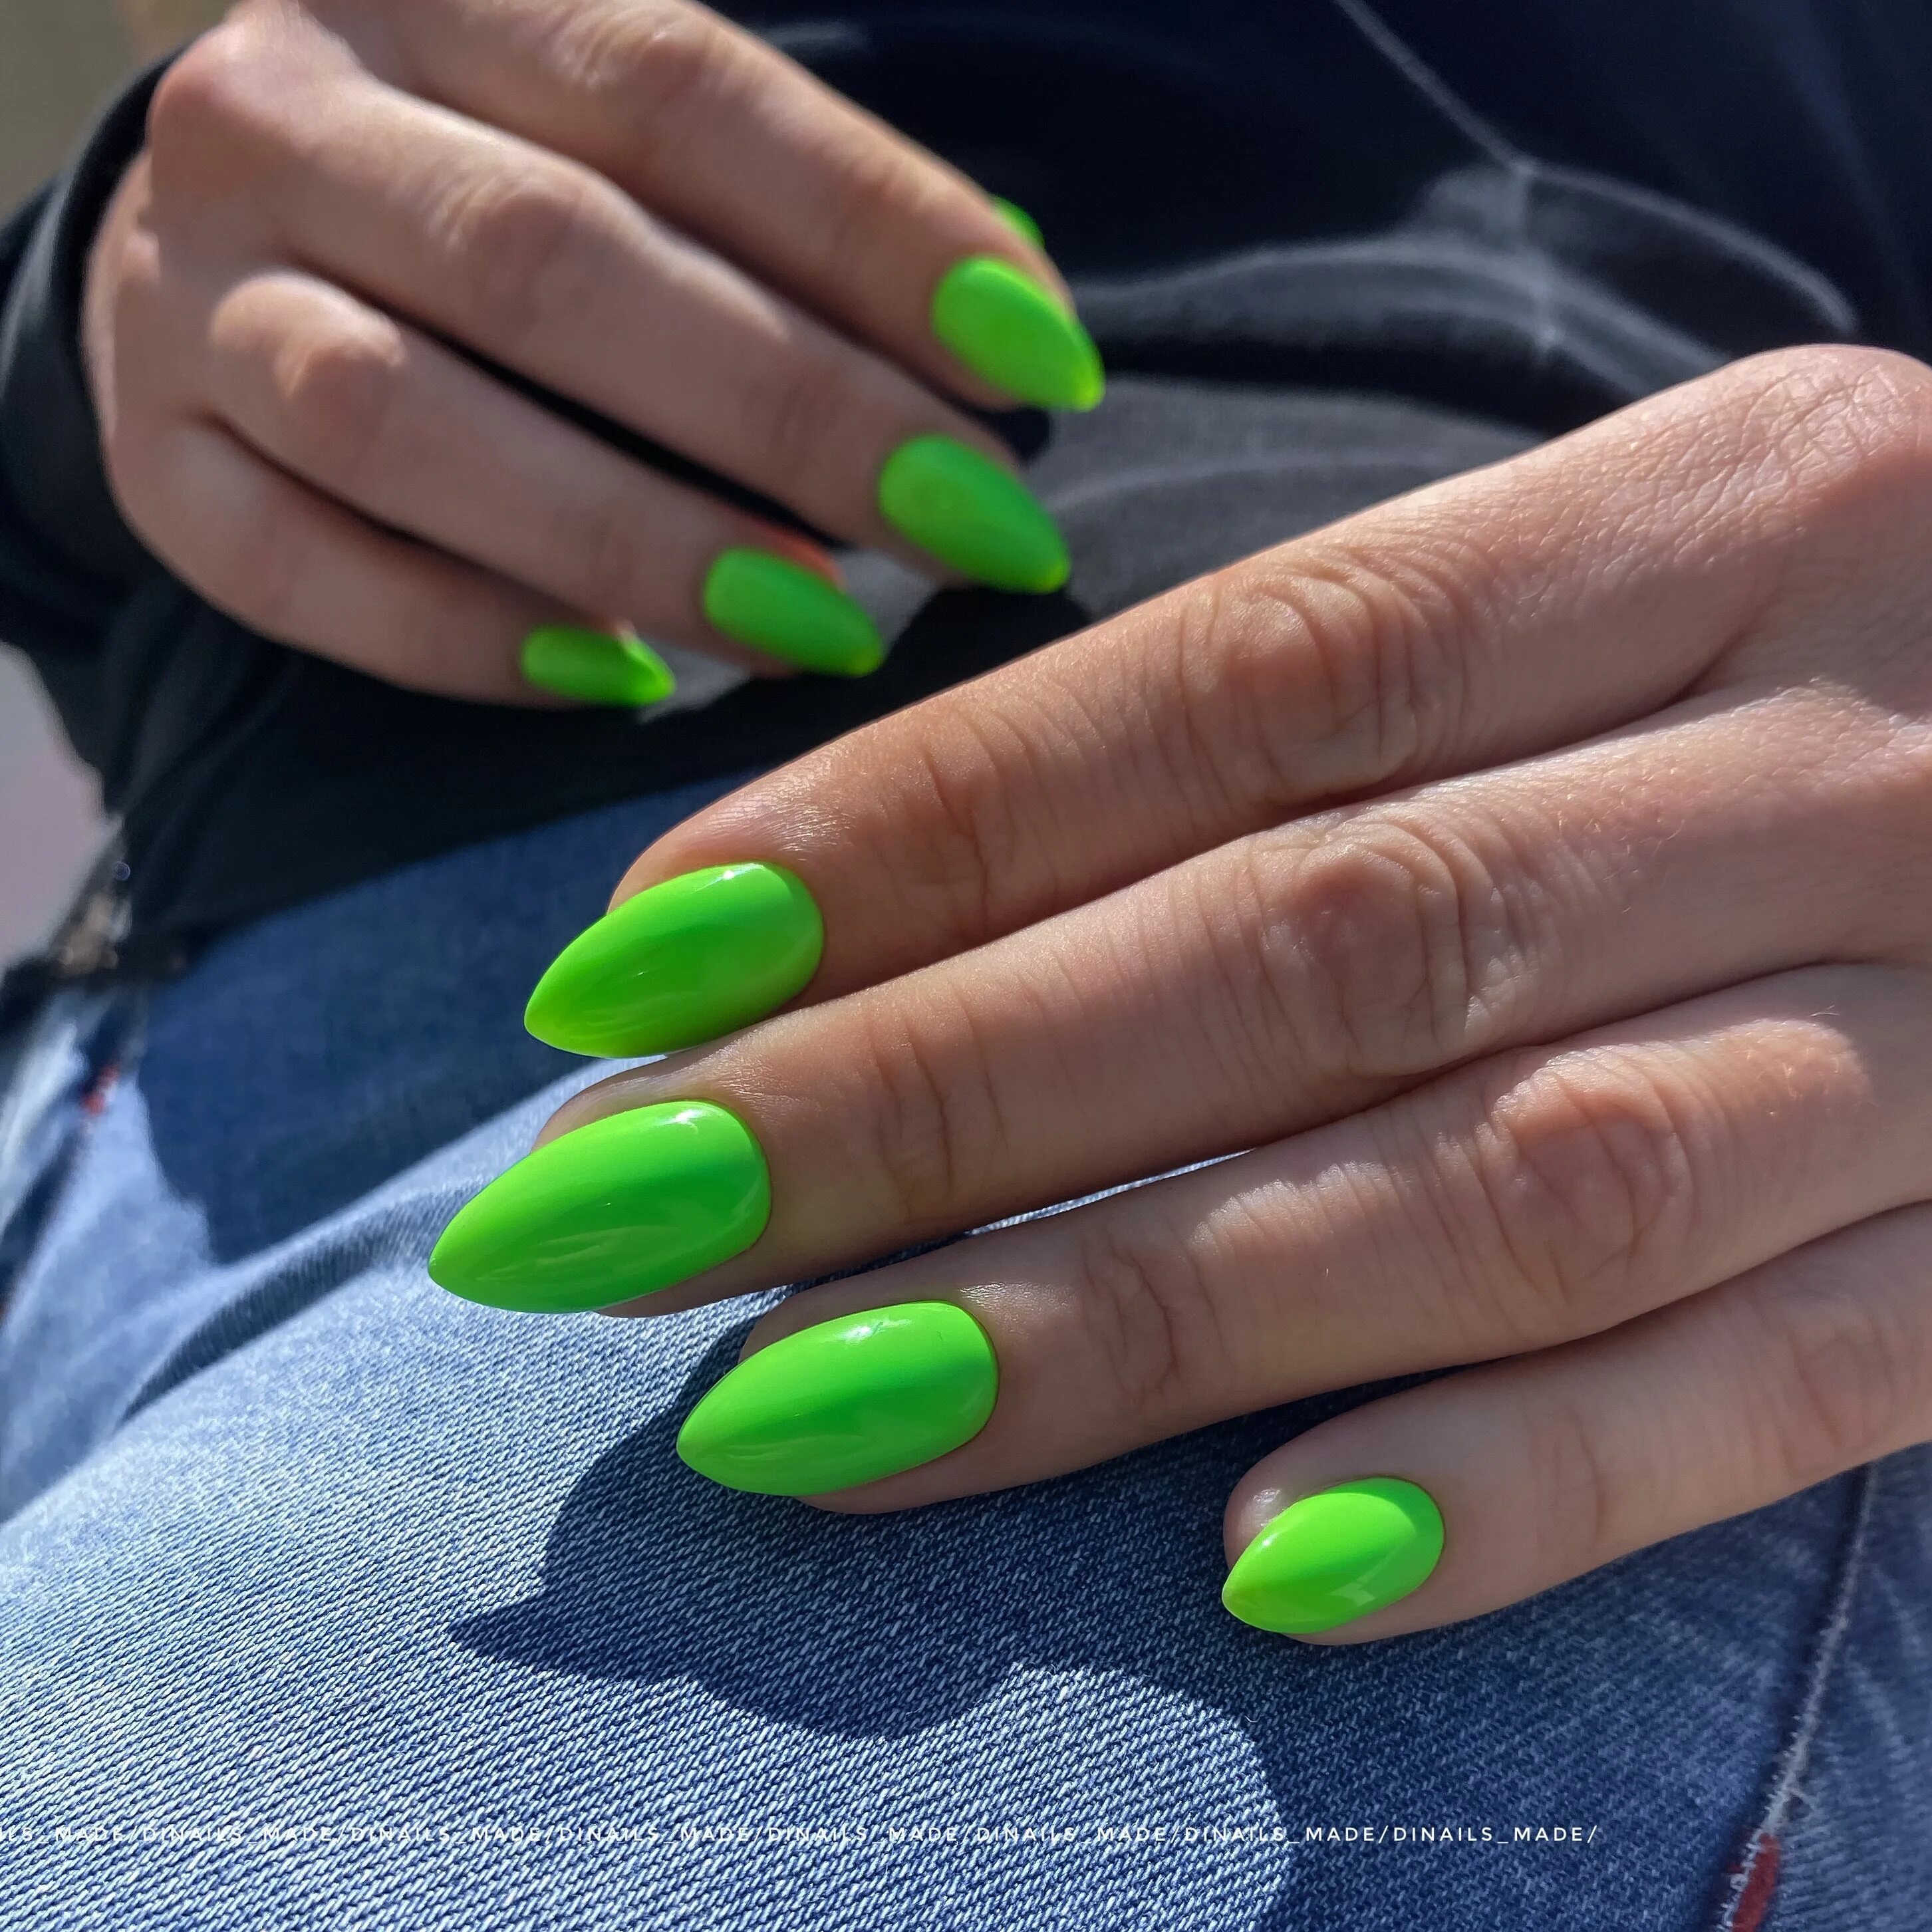 Кислотные ногти дизайн. Салатовый маникюр. Ярко-зеленый маникюр. Яркийсалатовыйминикюр. Яркие салатовые ногти.